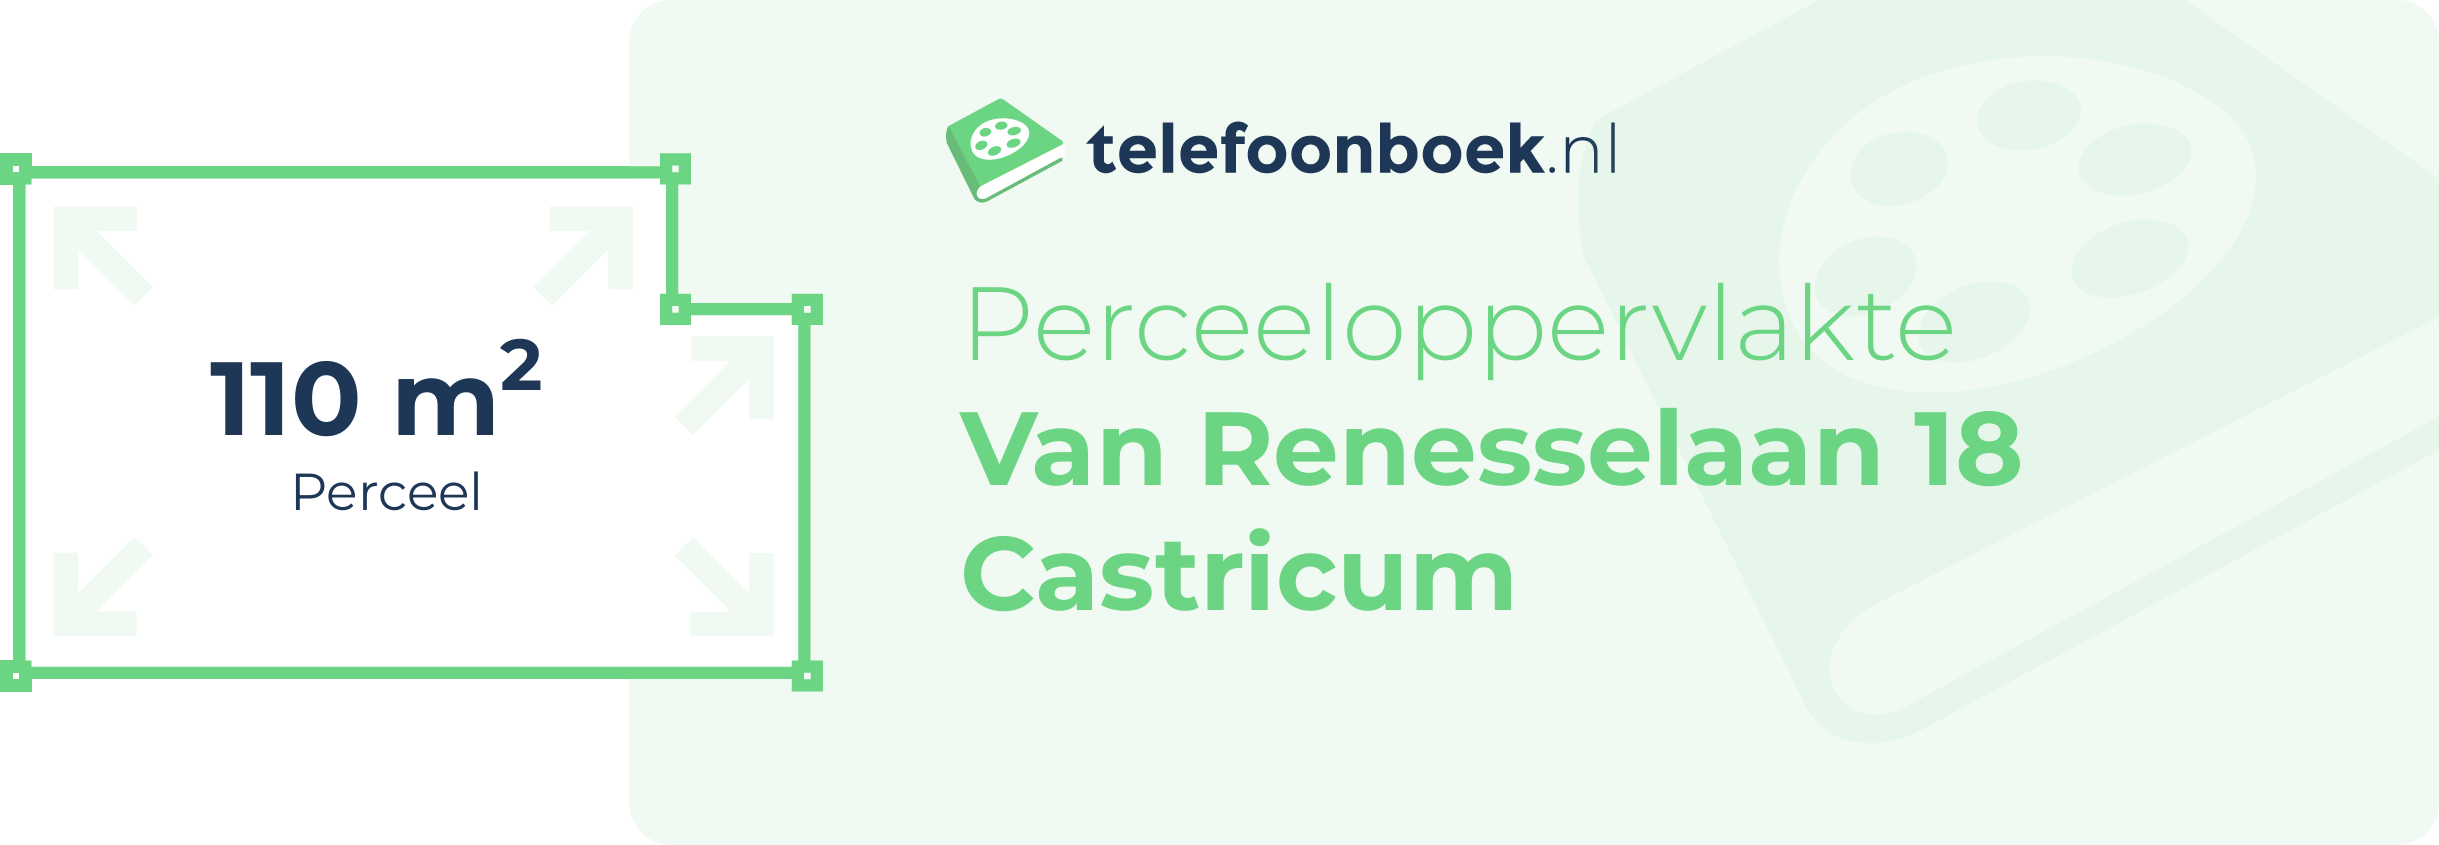 Perceeloppervlakte Van Renesselaan 18 Castricum